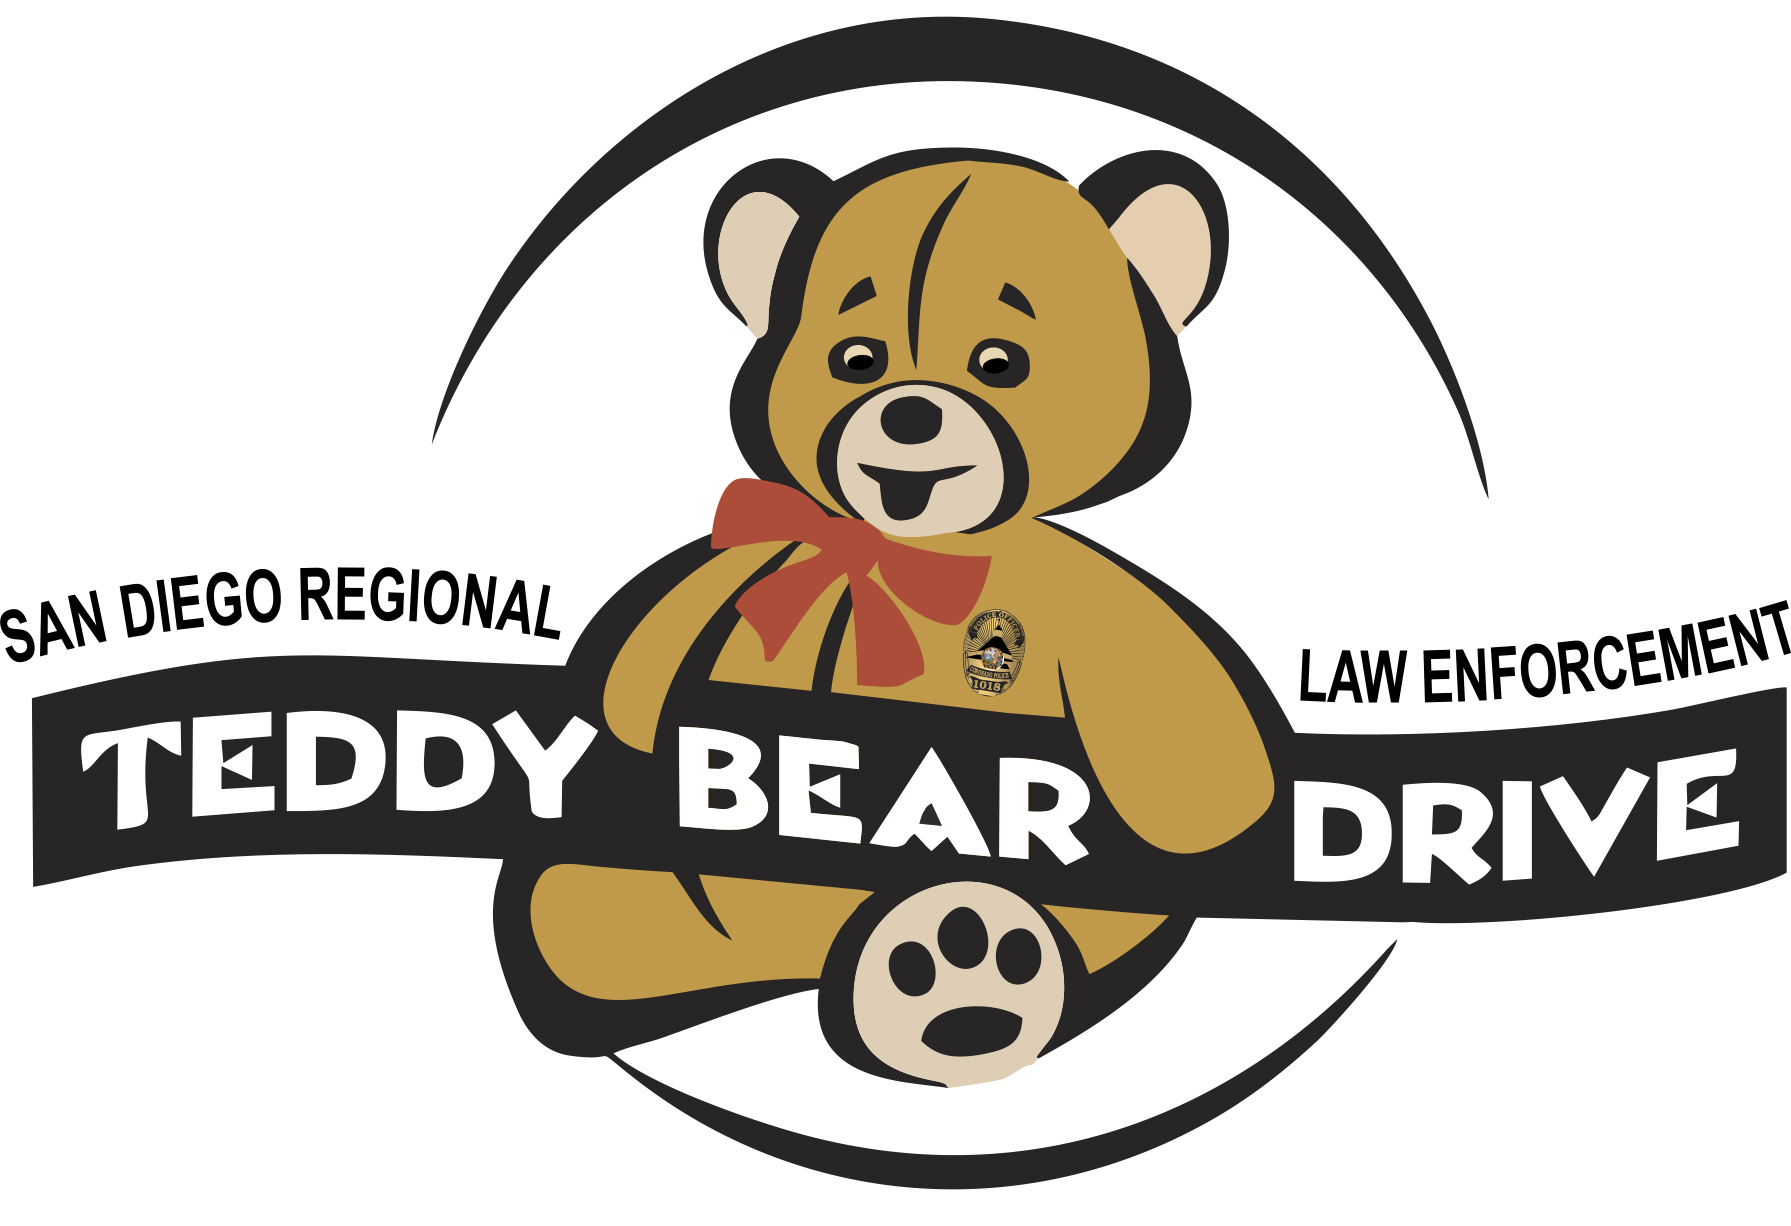 teddy logo